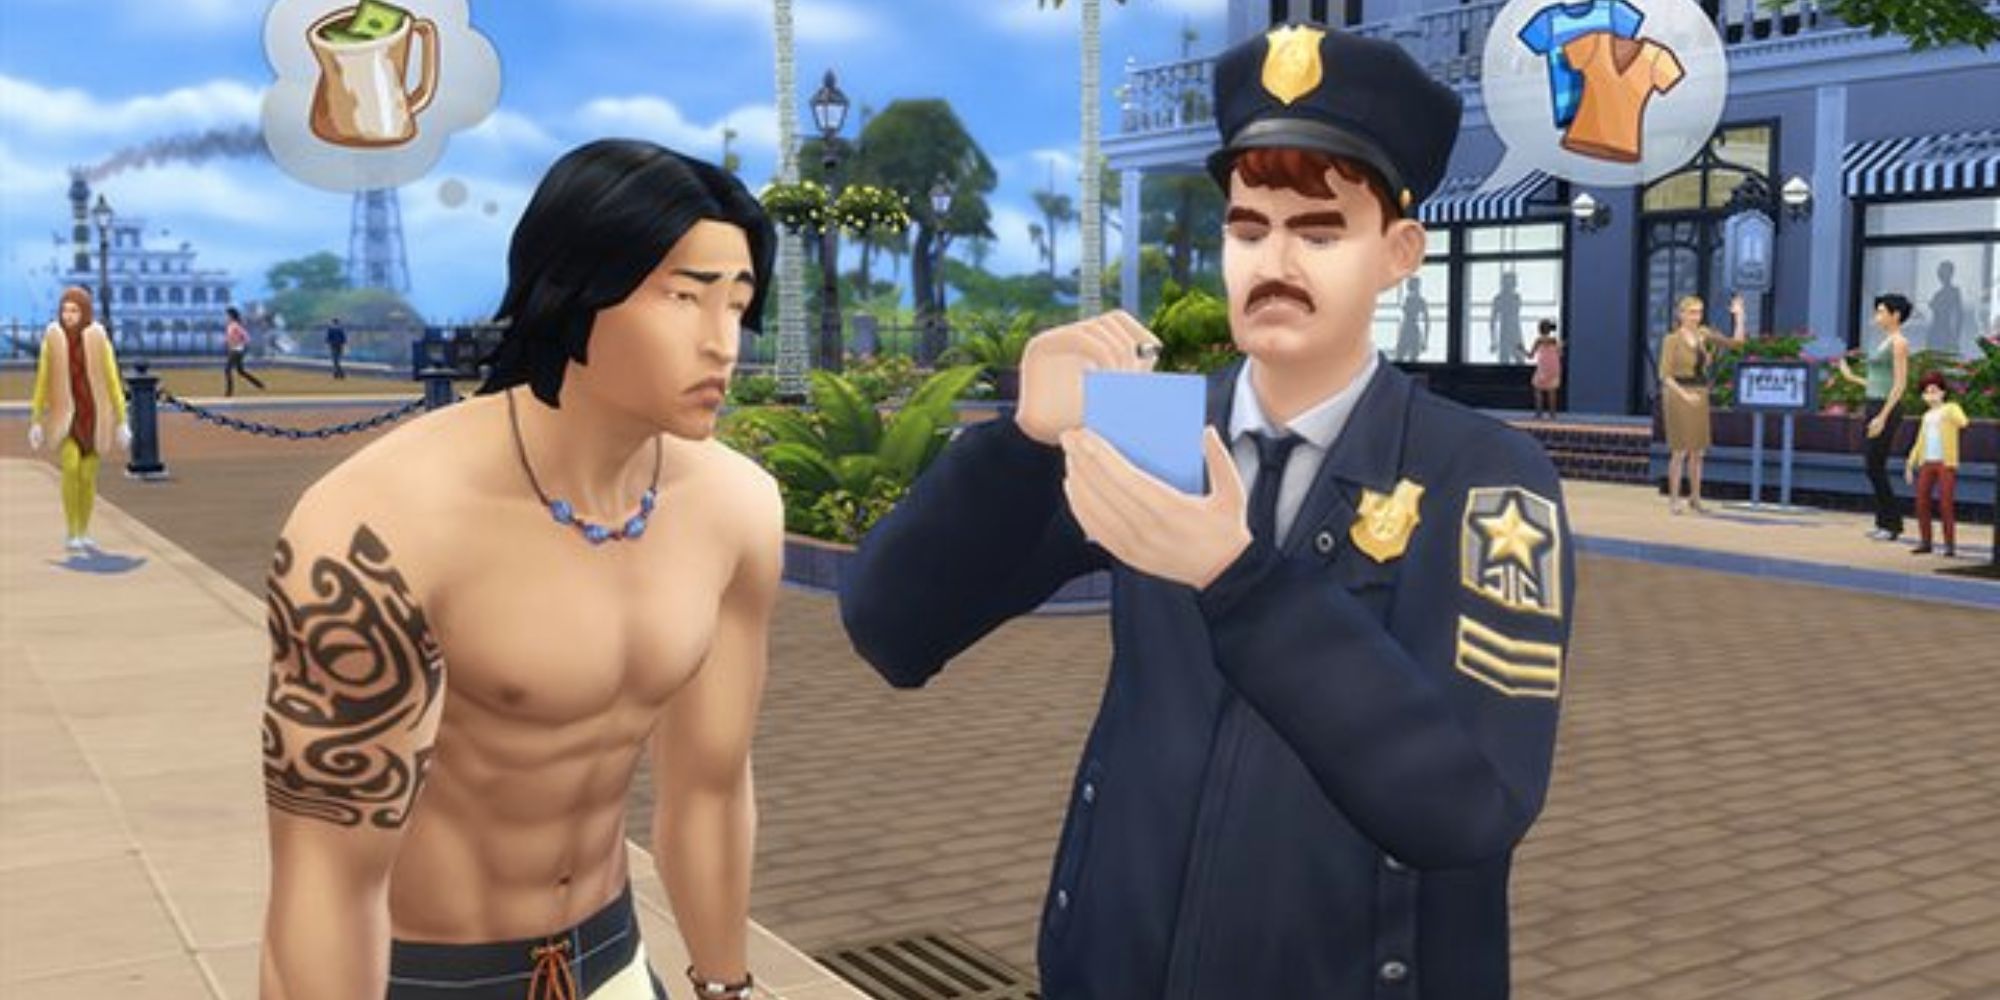 Hiện trường vụ án The Sims